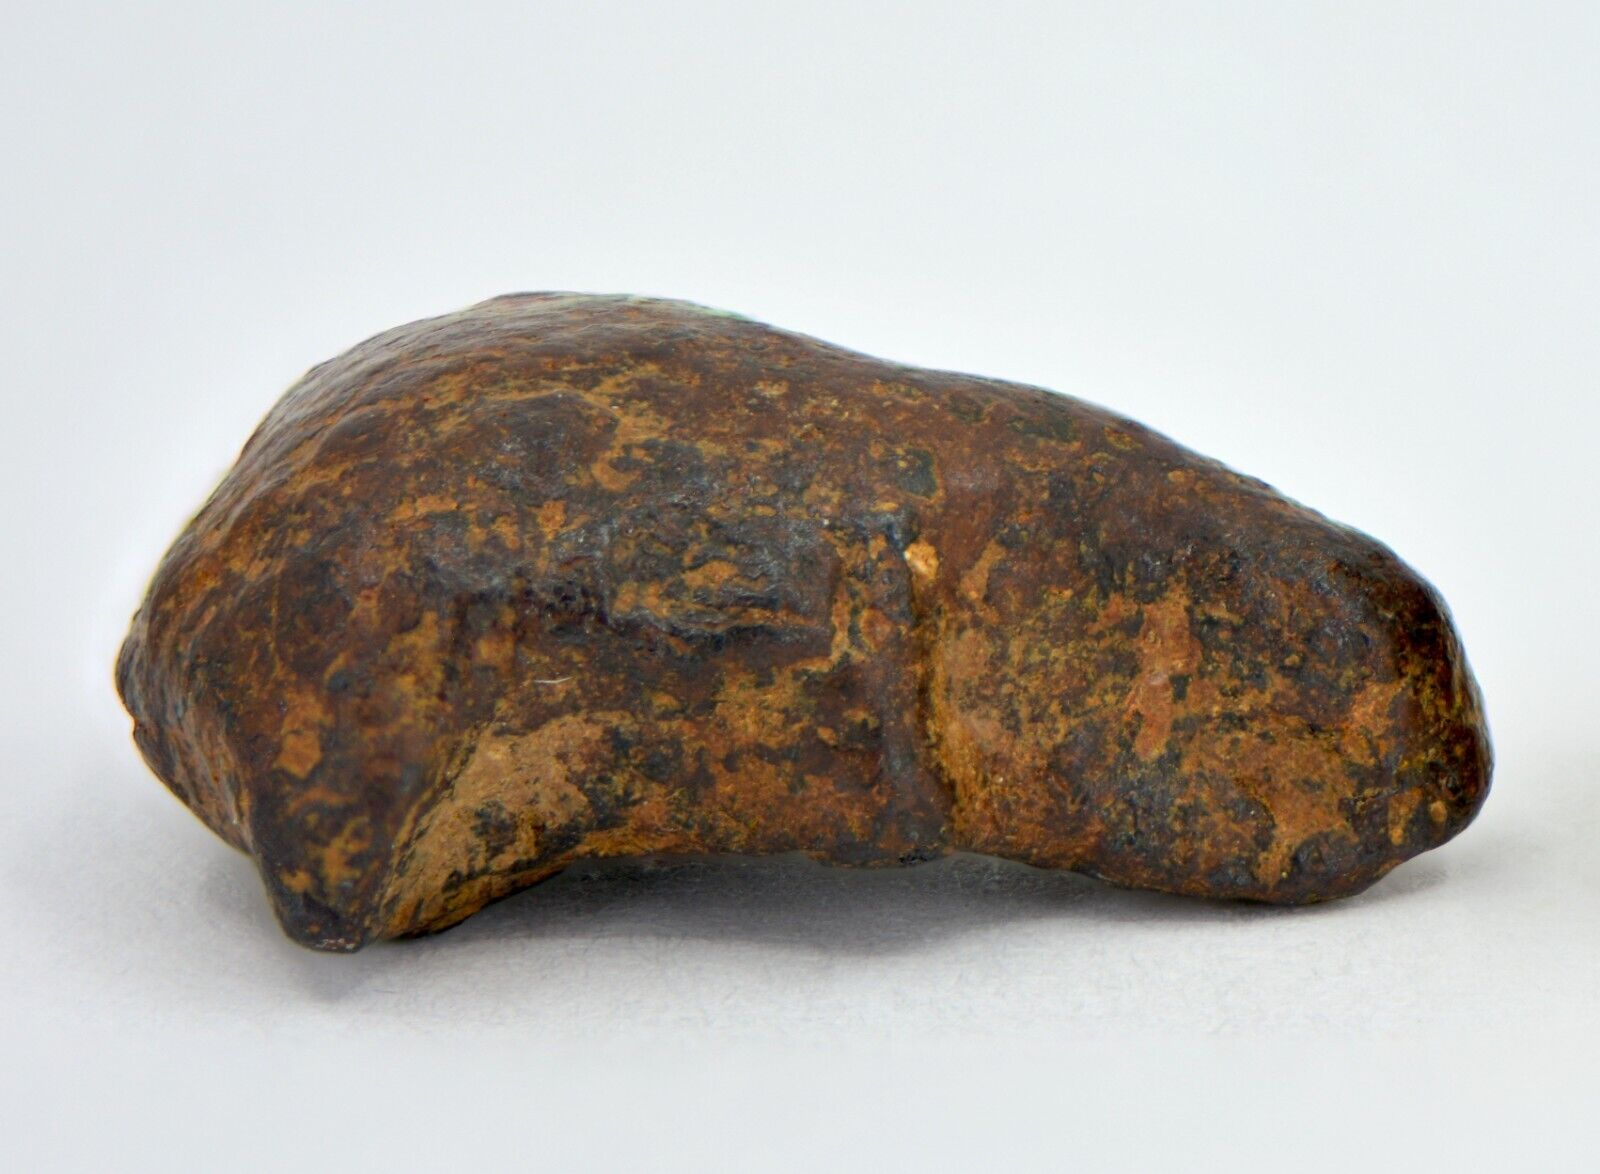 7.6 gram NWA 859 TAZA meteorite - Ungrouped Iron Meteorite I TOP METEORITE